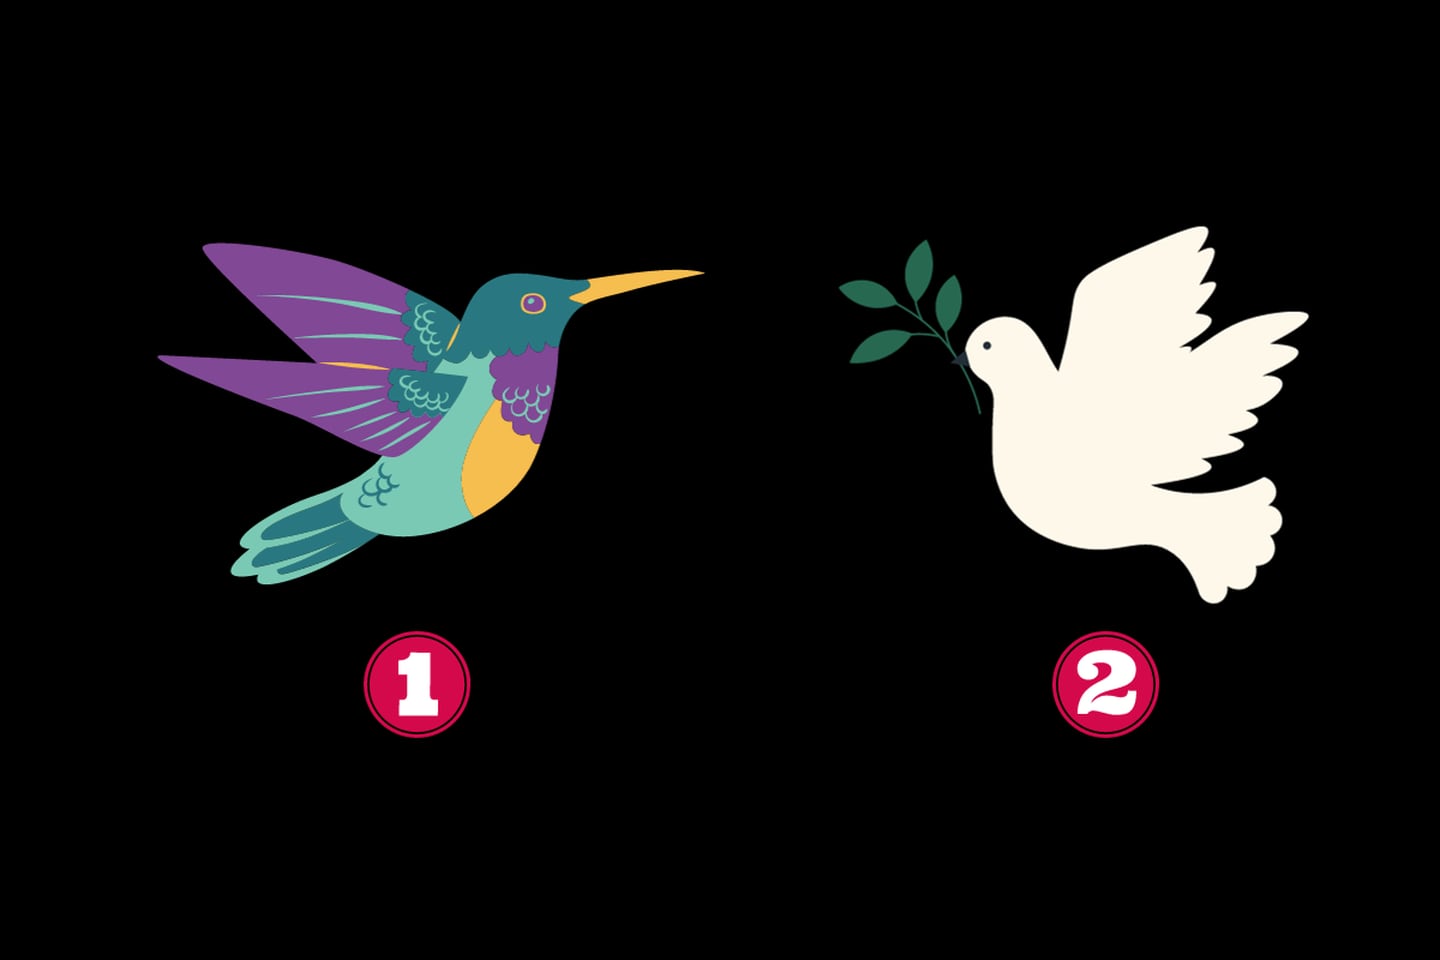 En este test de personalidad puedes elegir entre un colibrí y una paloma blanca.